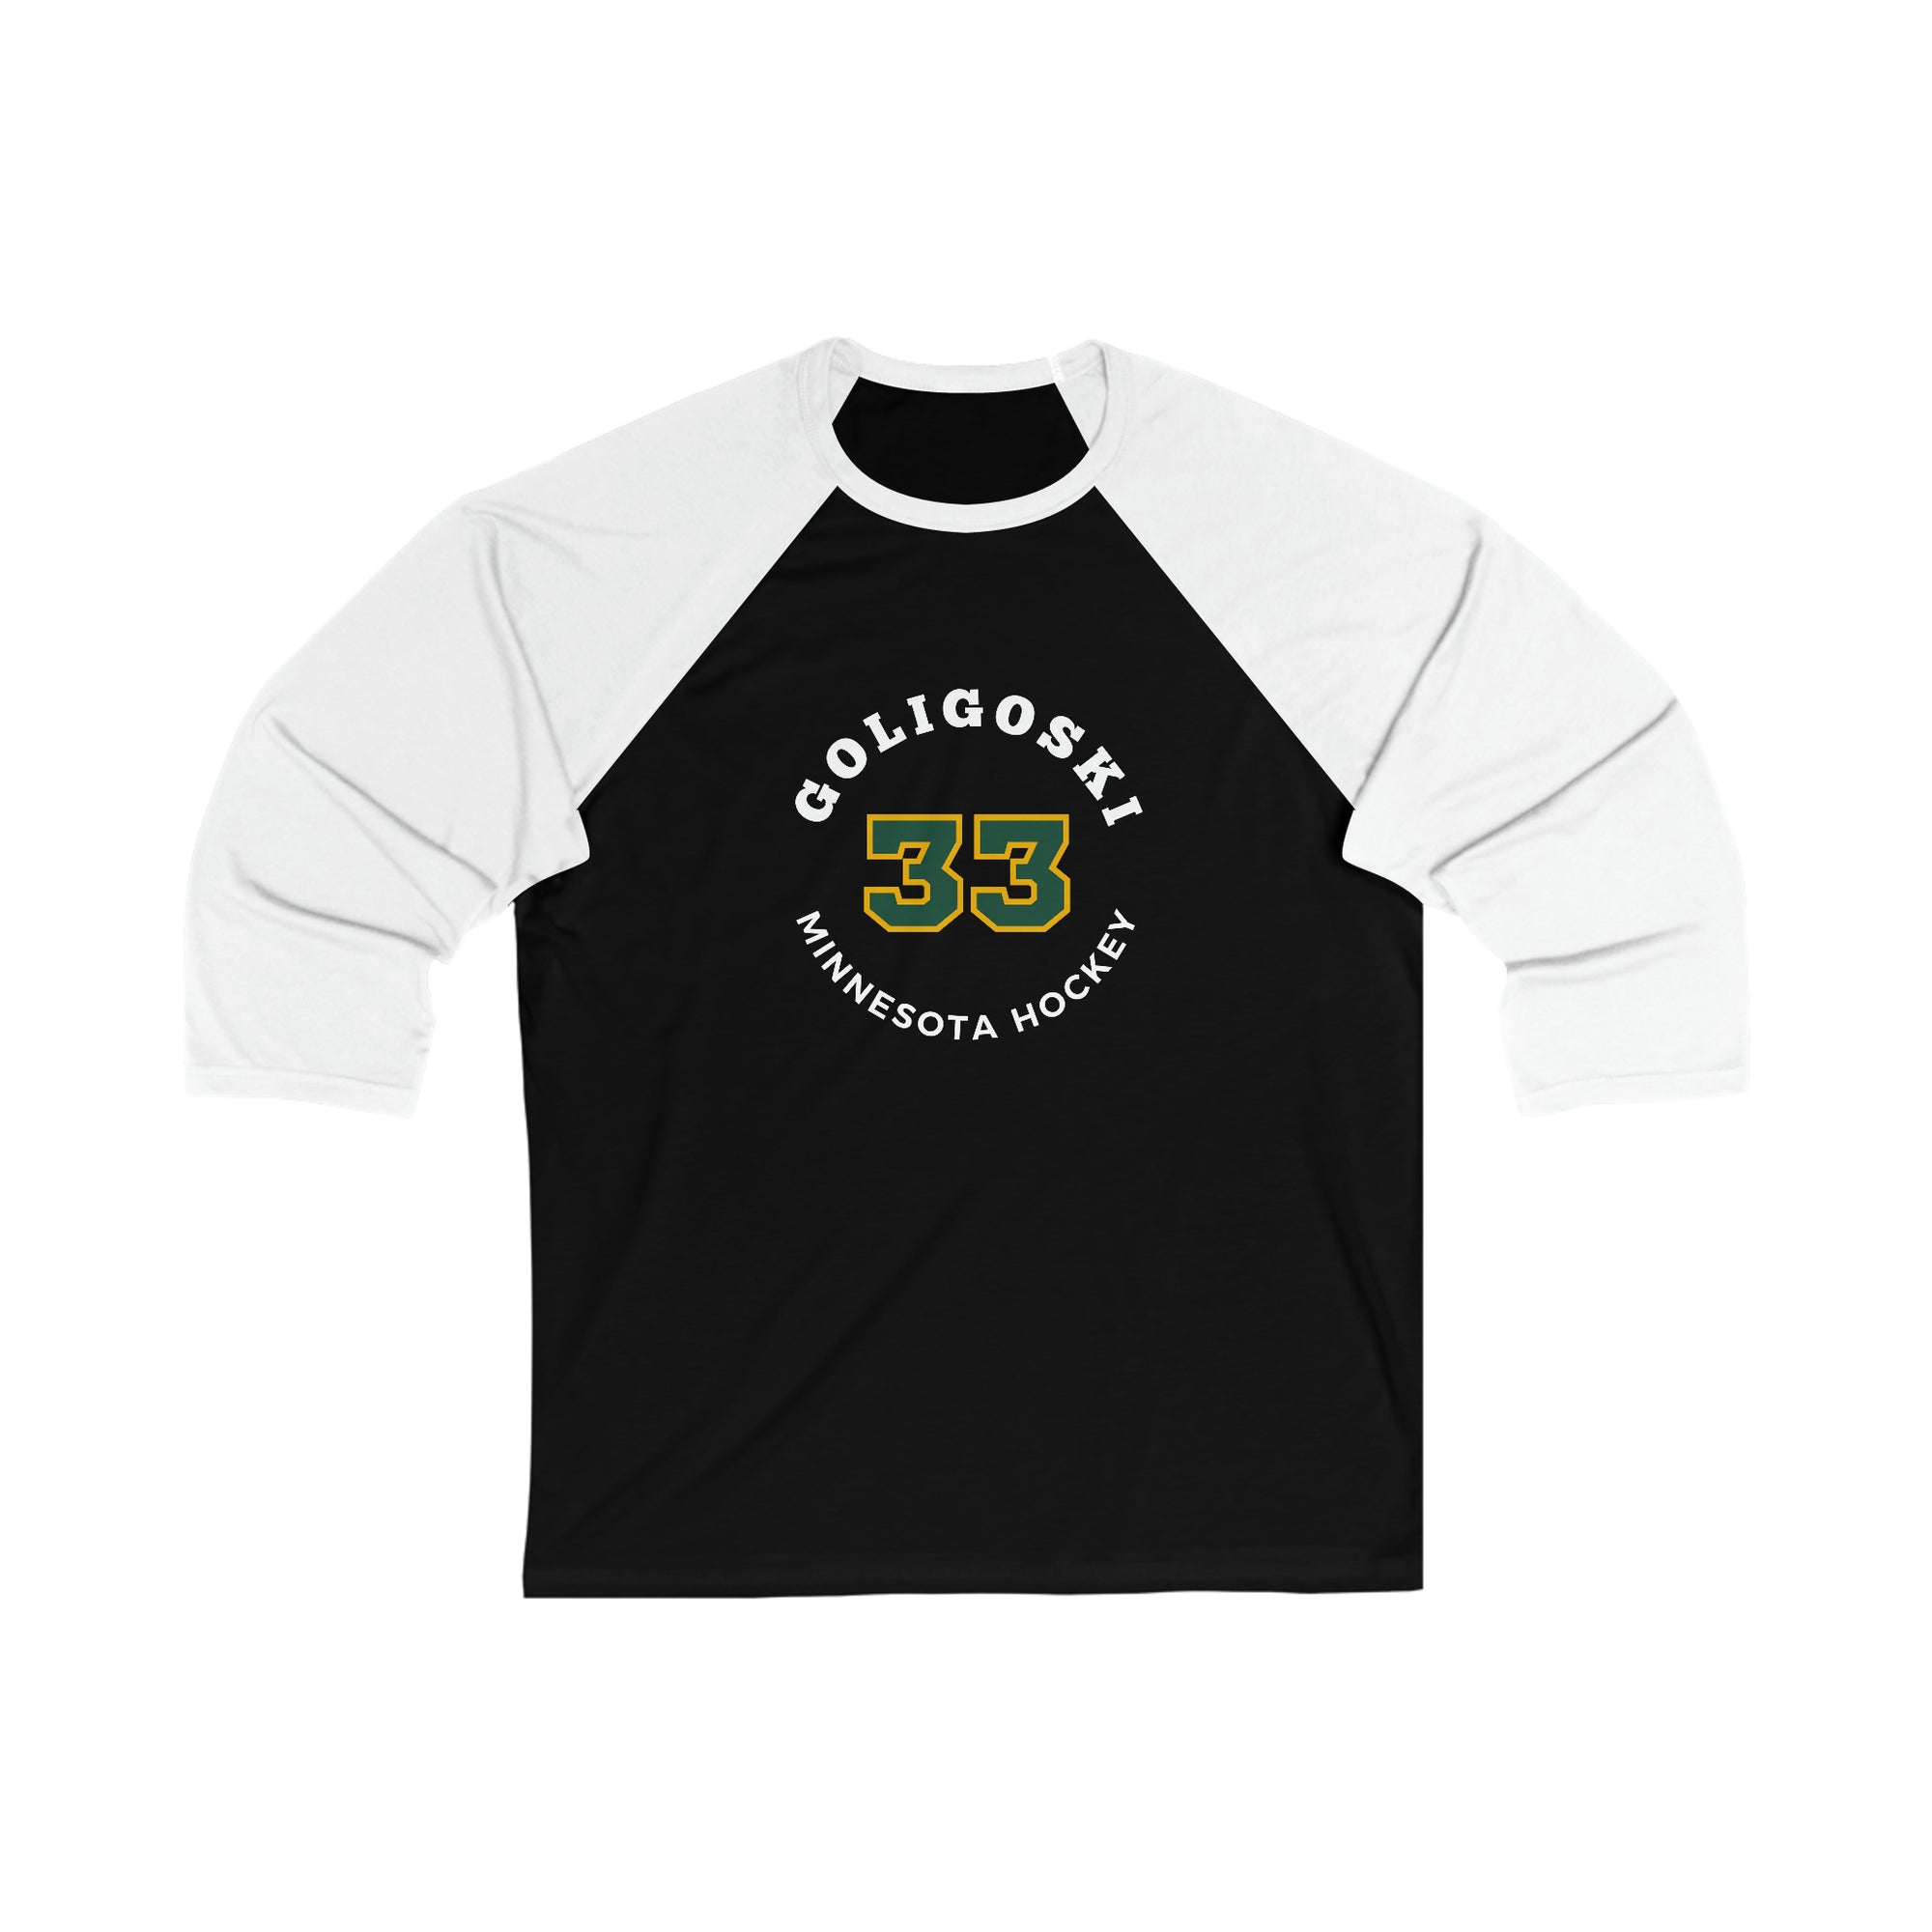 Goligoski 33 Minnesota Hockey Number Arch Design Unisex Tri-Blend 3/4 Sleeve Raglan Baseball Shirt